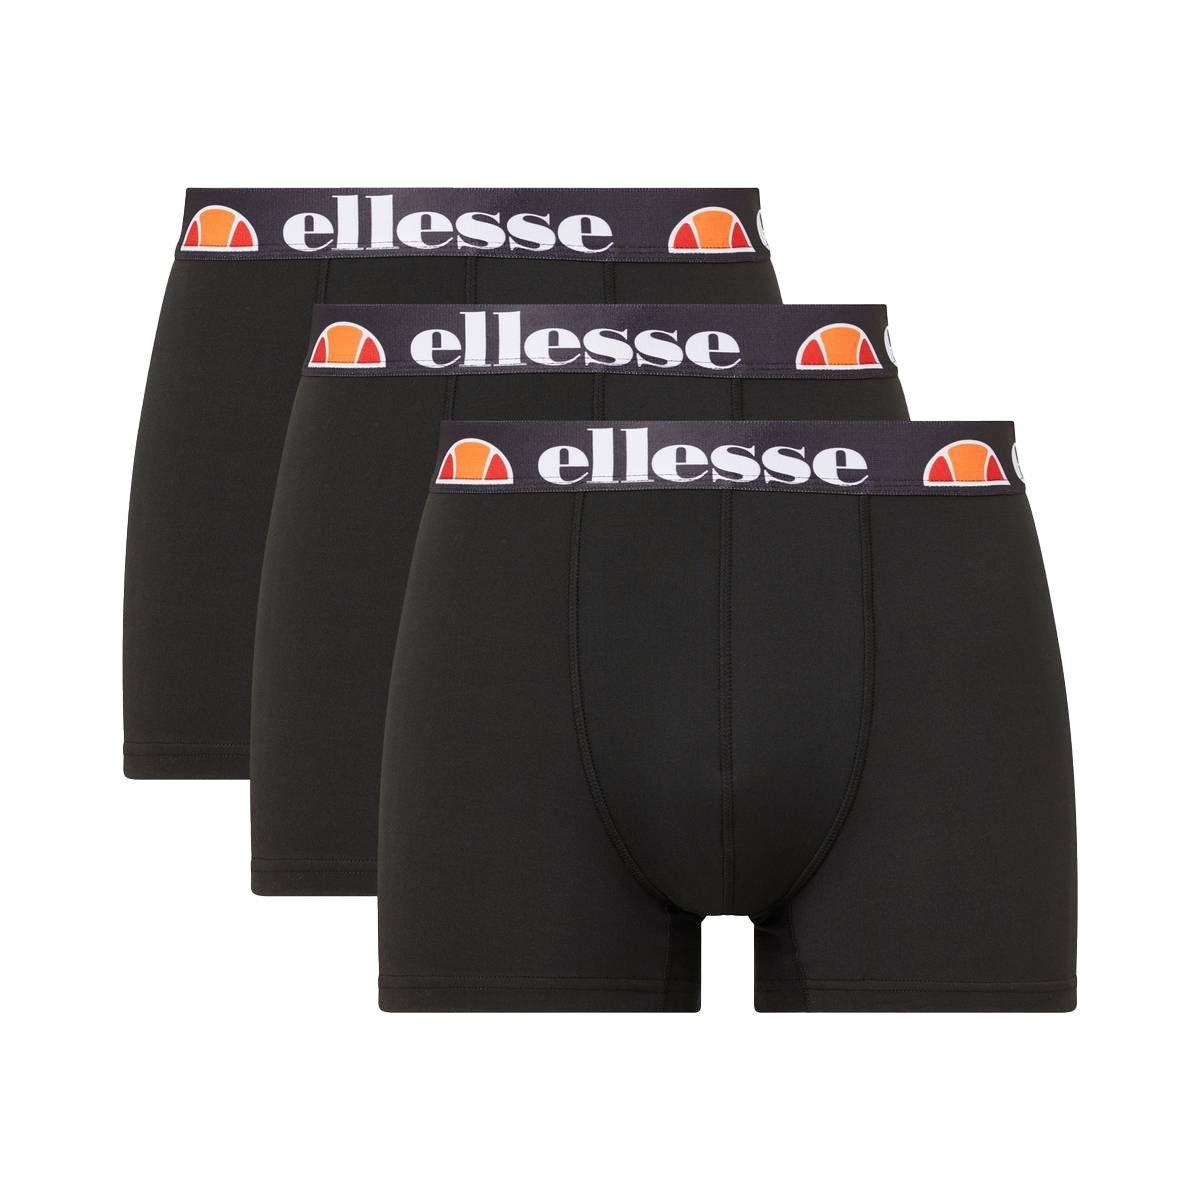 ellesse Unterhosen für Herren online kaufen | OTTO